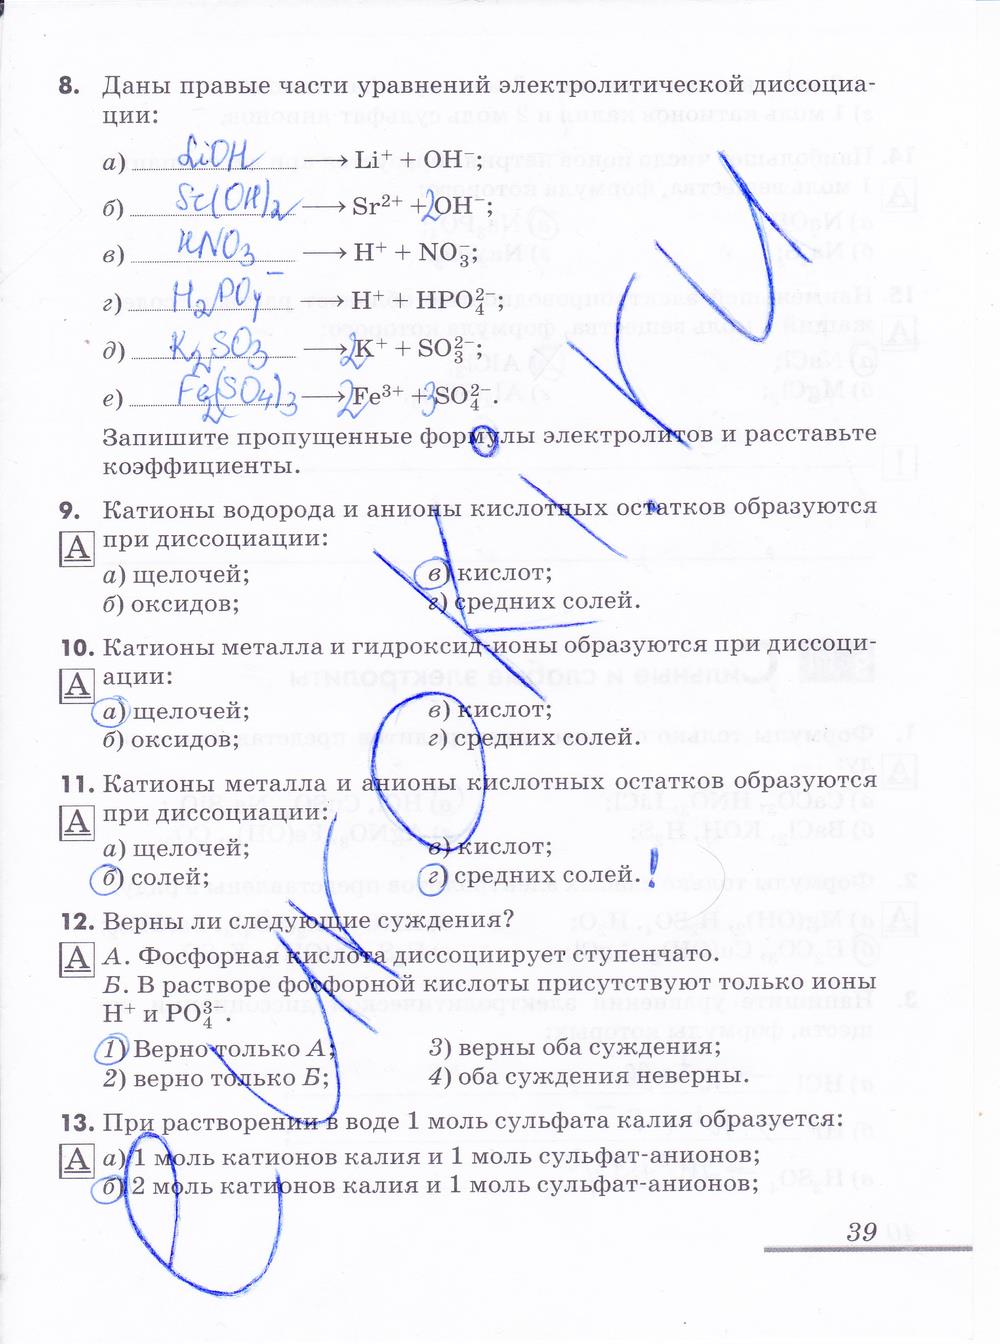 гдз 9 класс рабочая тетрадь страница 39 химия Еремин, Дроздов